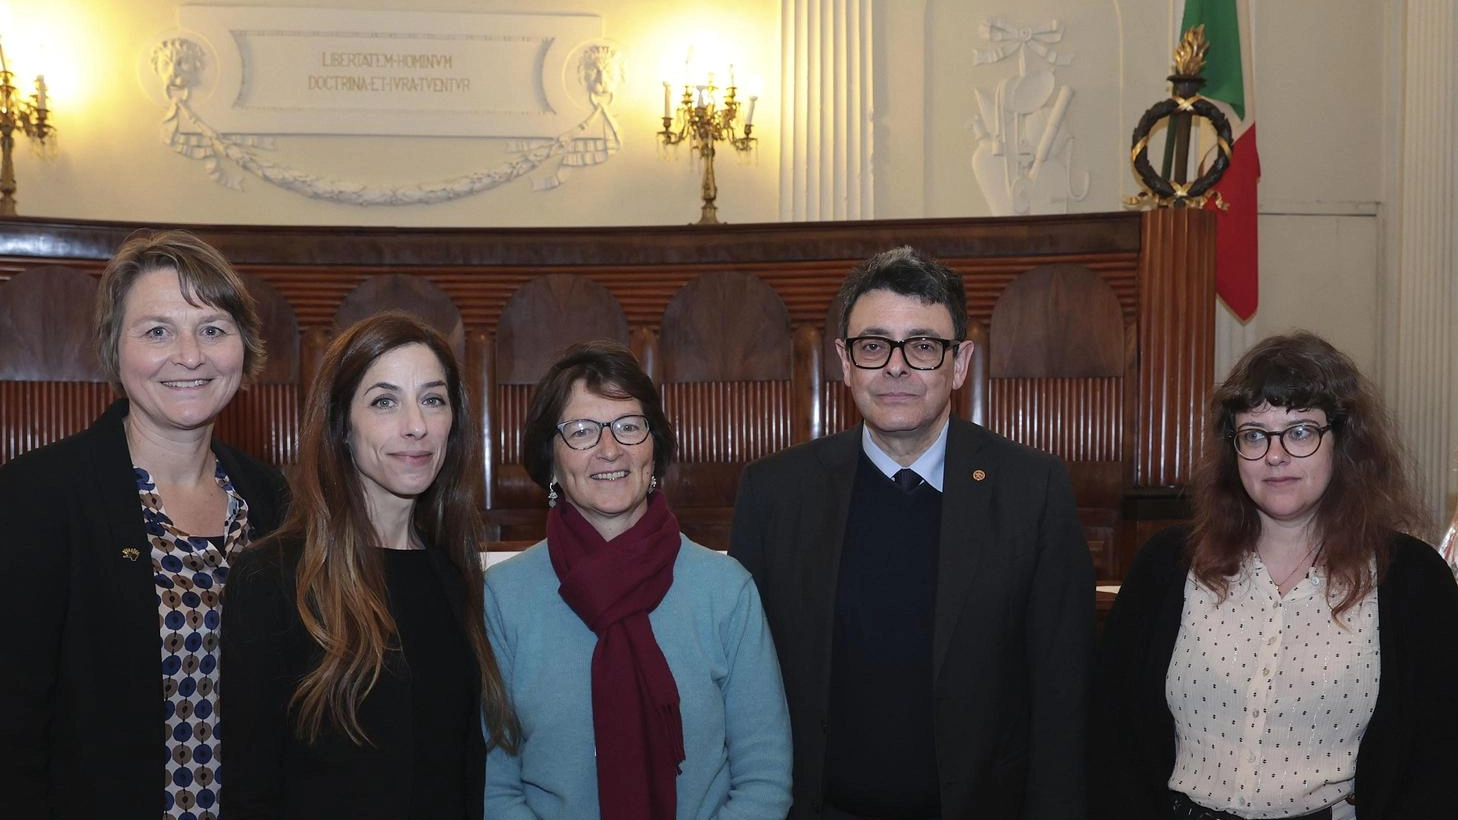 L'Università di Siena lancia il primo Master internazionale per interpreti di Lingua dei Segni, unica in Italia ed Europa, per formare professionisti multilingue e rispondere alla crescente domanda di interpreti qualificati.